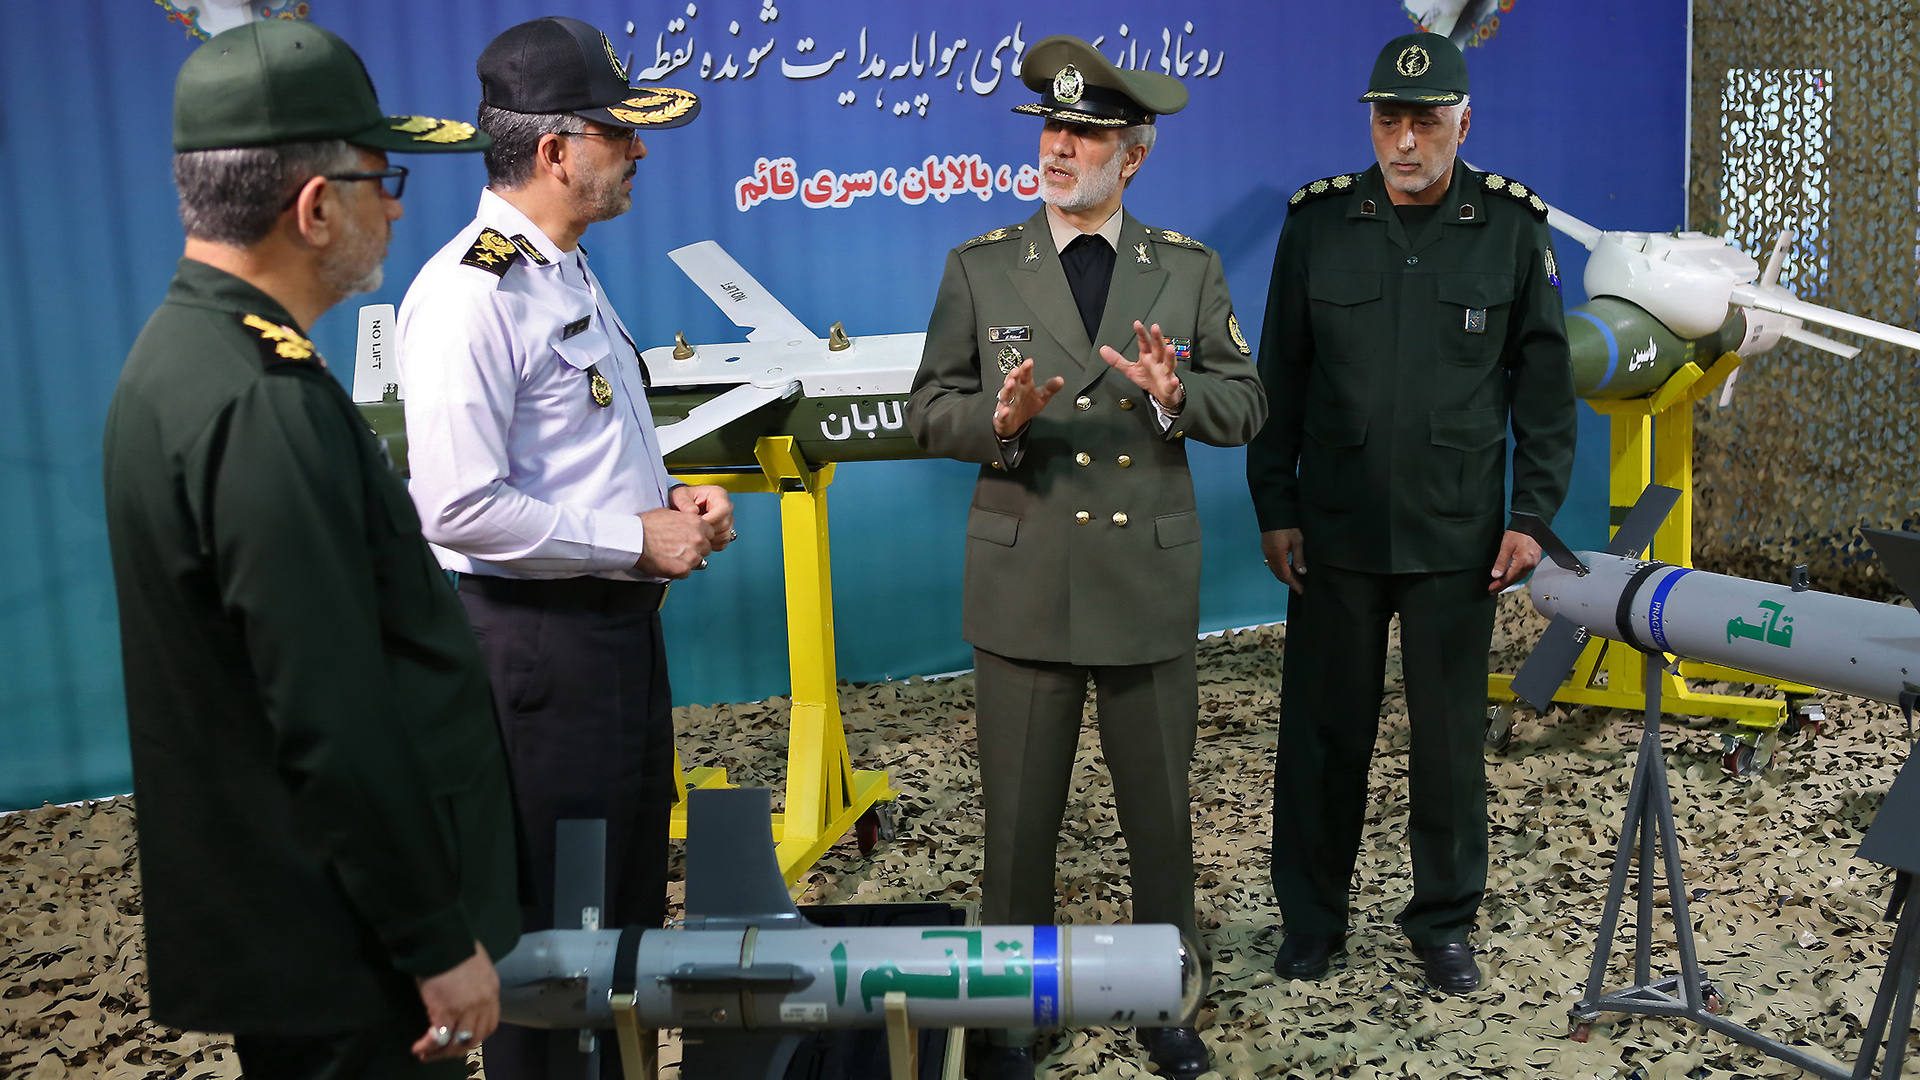 Presentación de los misiles "Balaban", "Ghaem", y "Yasin" (AFP)